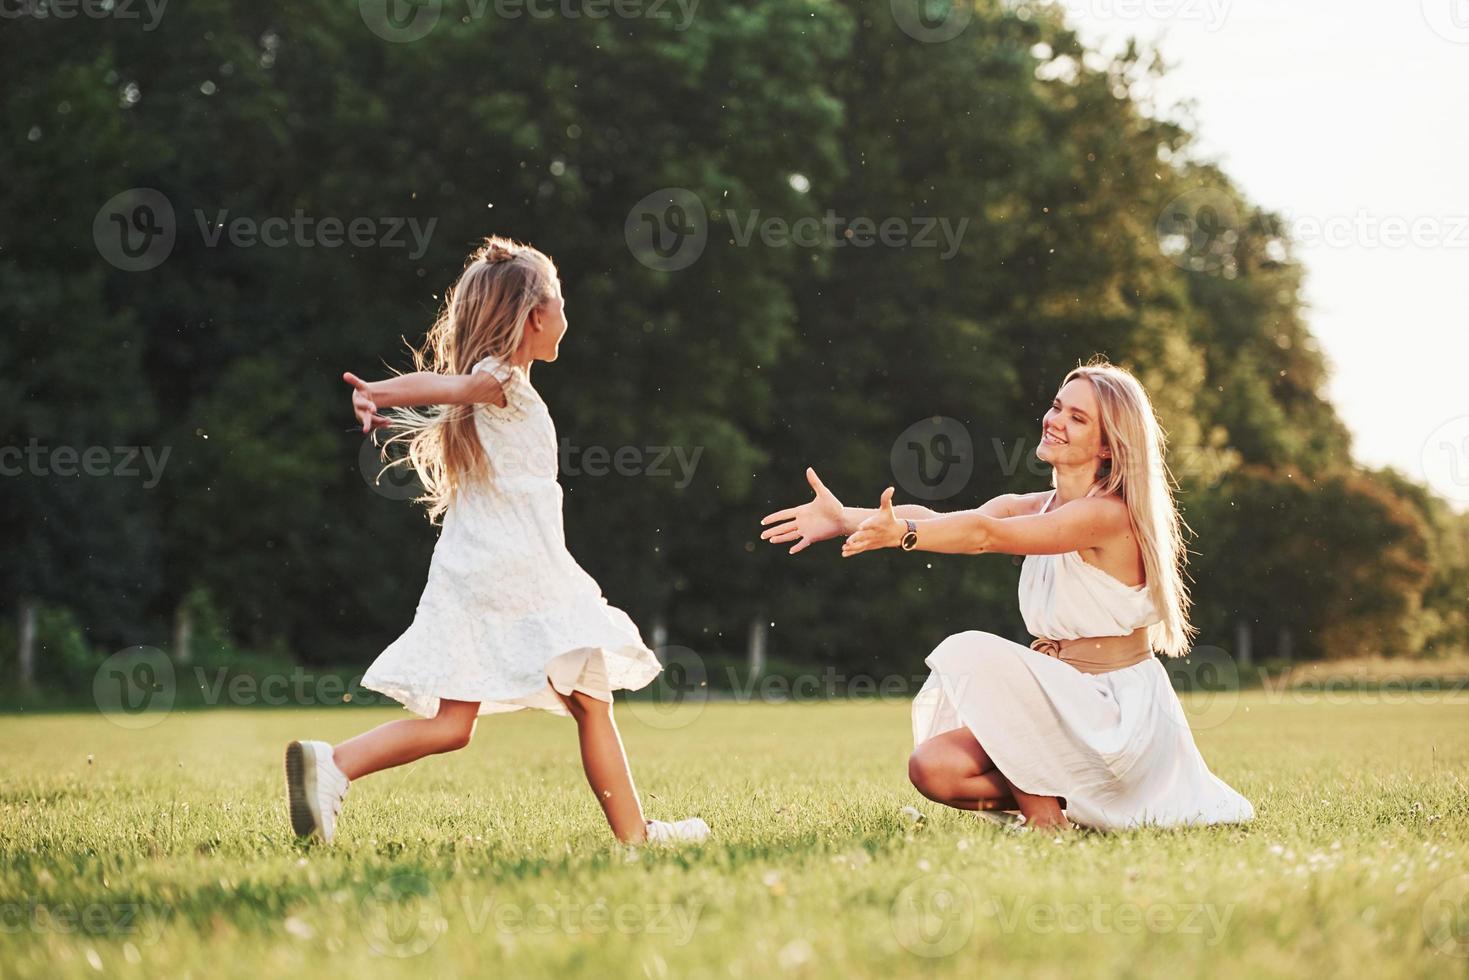 eindelijk ontmoetten we elkaar. moeder en dochter genieten van weekend samen door buiten in het veld te wandelen. prachtige natuur foto